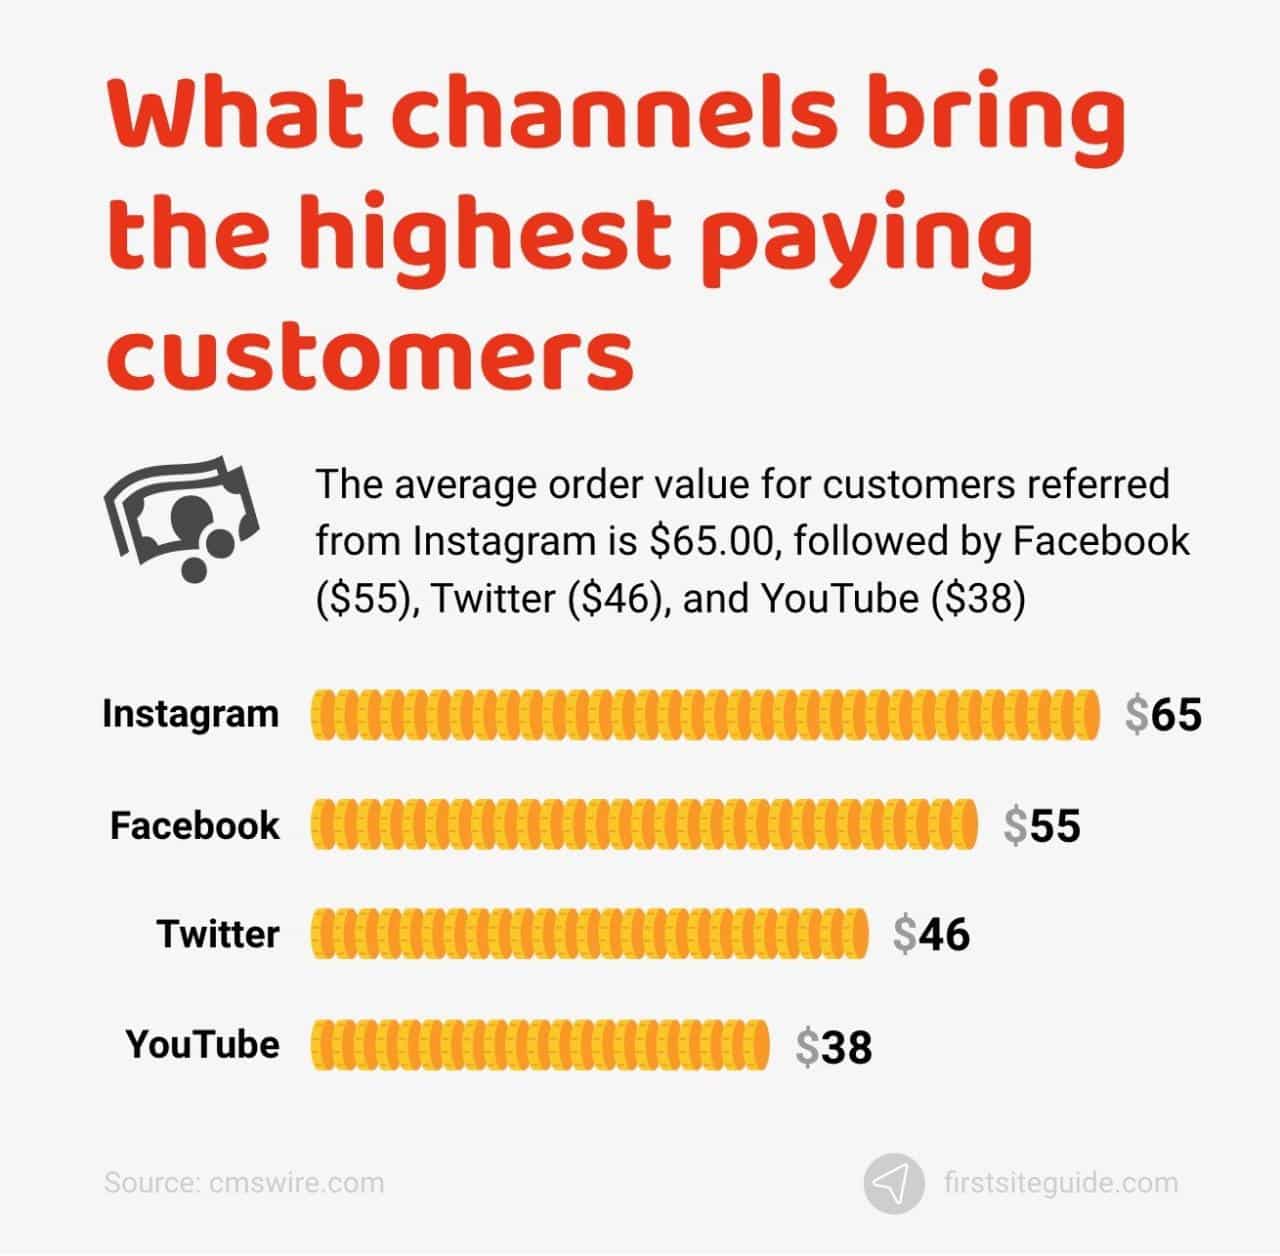 ¿Qué canales aportan los clientes que más pagan?